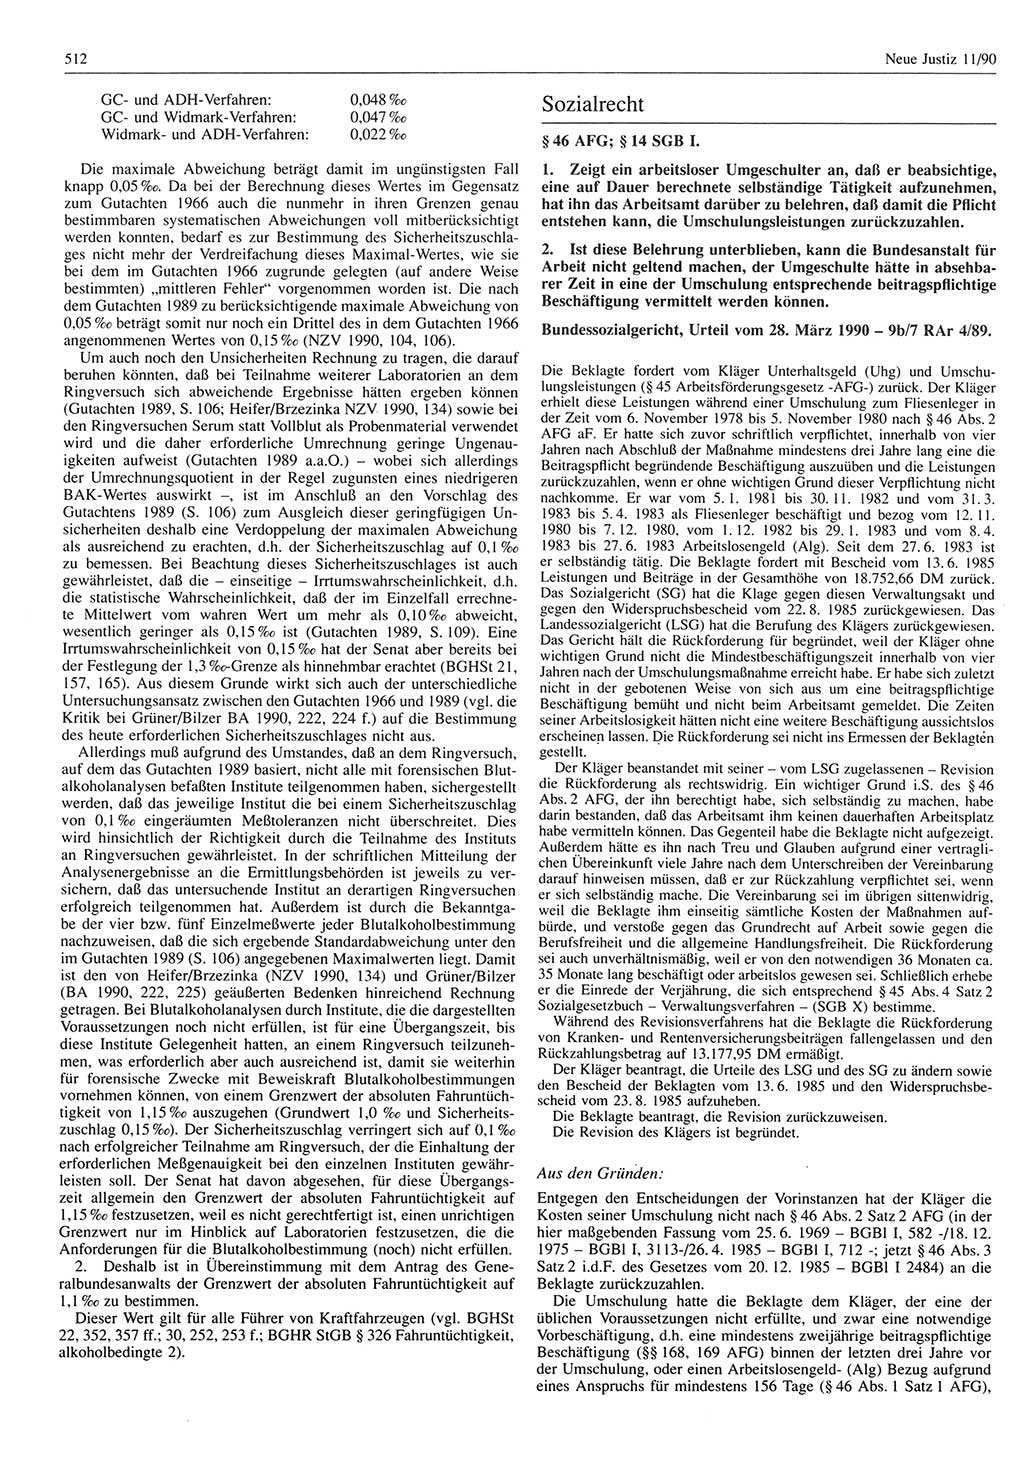 Neue Justiz (NJ), Zeitschrift für Rechtsetzung und Rechtsanwendung [Deutsche Demokratische Republik (DDR)], 44. Jahrgang 1990, Seite 512 (NJ DDR 1990, S. 512)